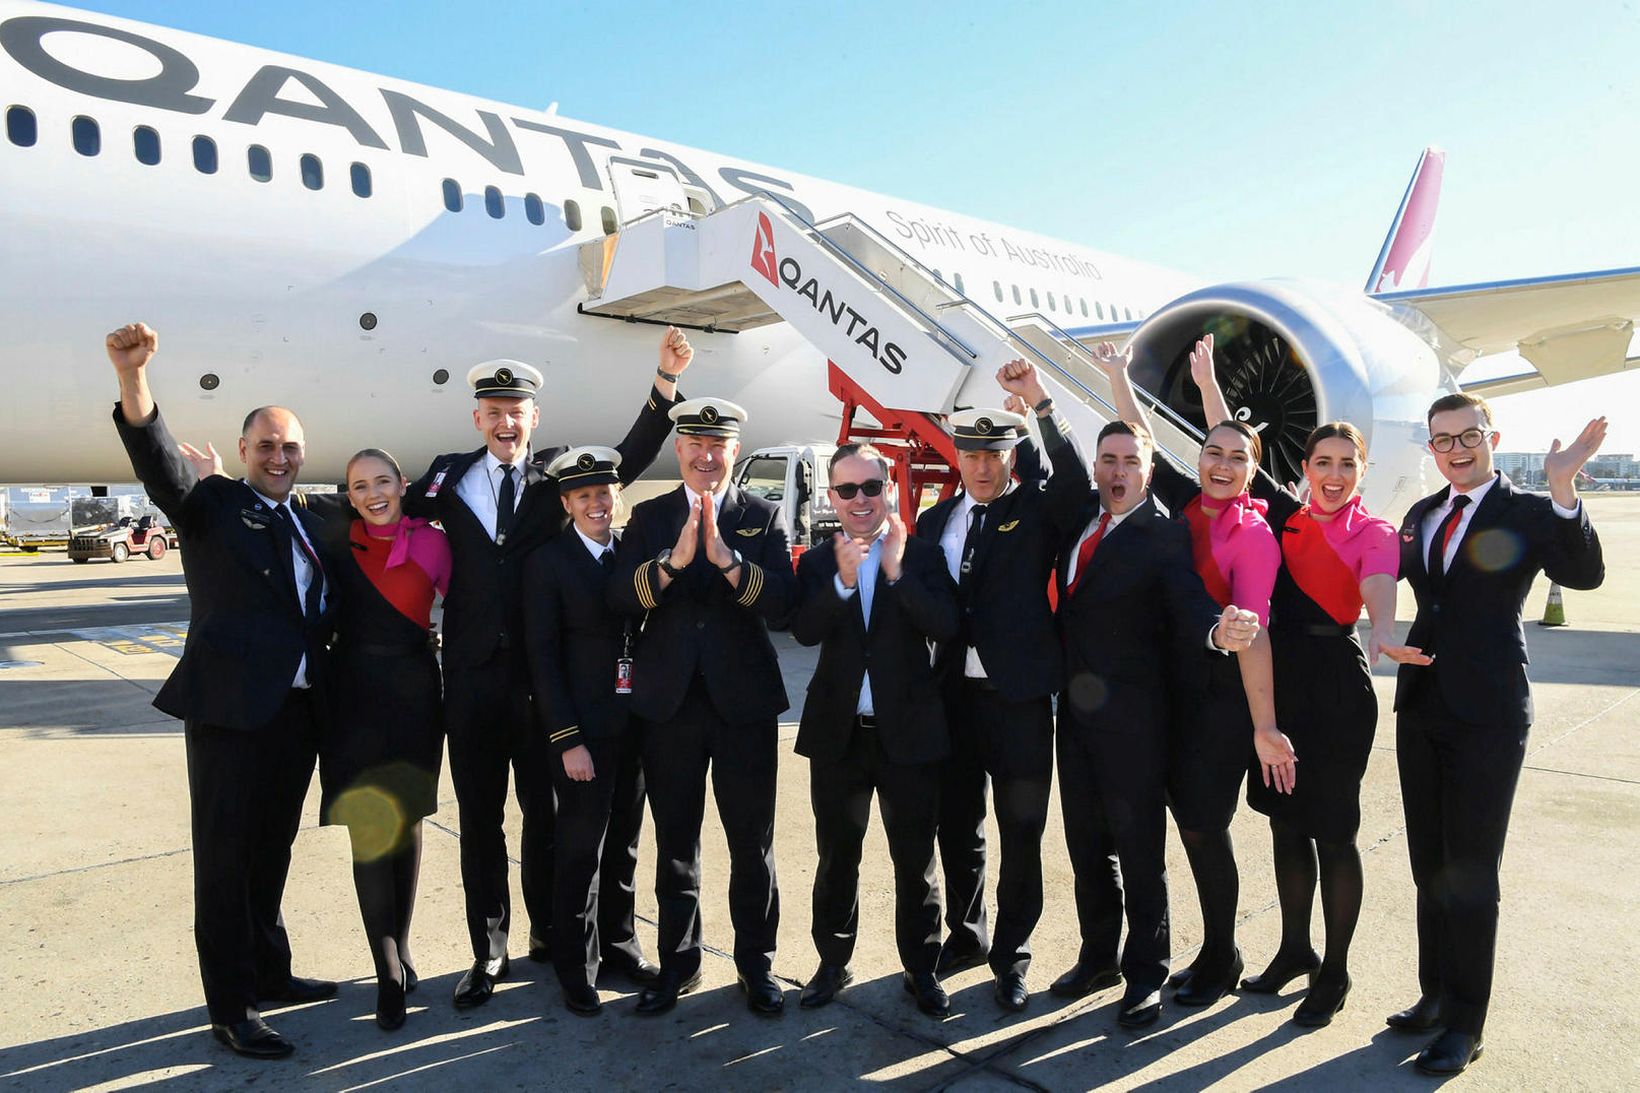 Áhöfn Qantas fagnar vel heppnuðu flugi við komuna til Sydney.